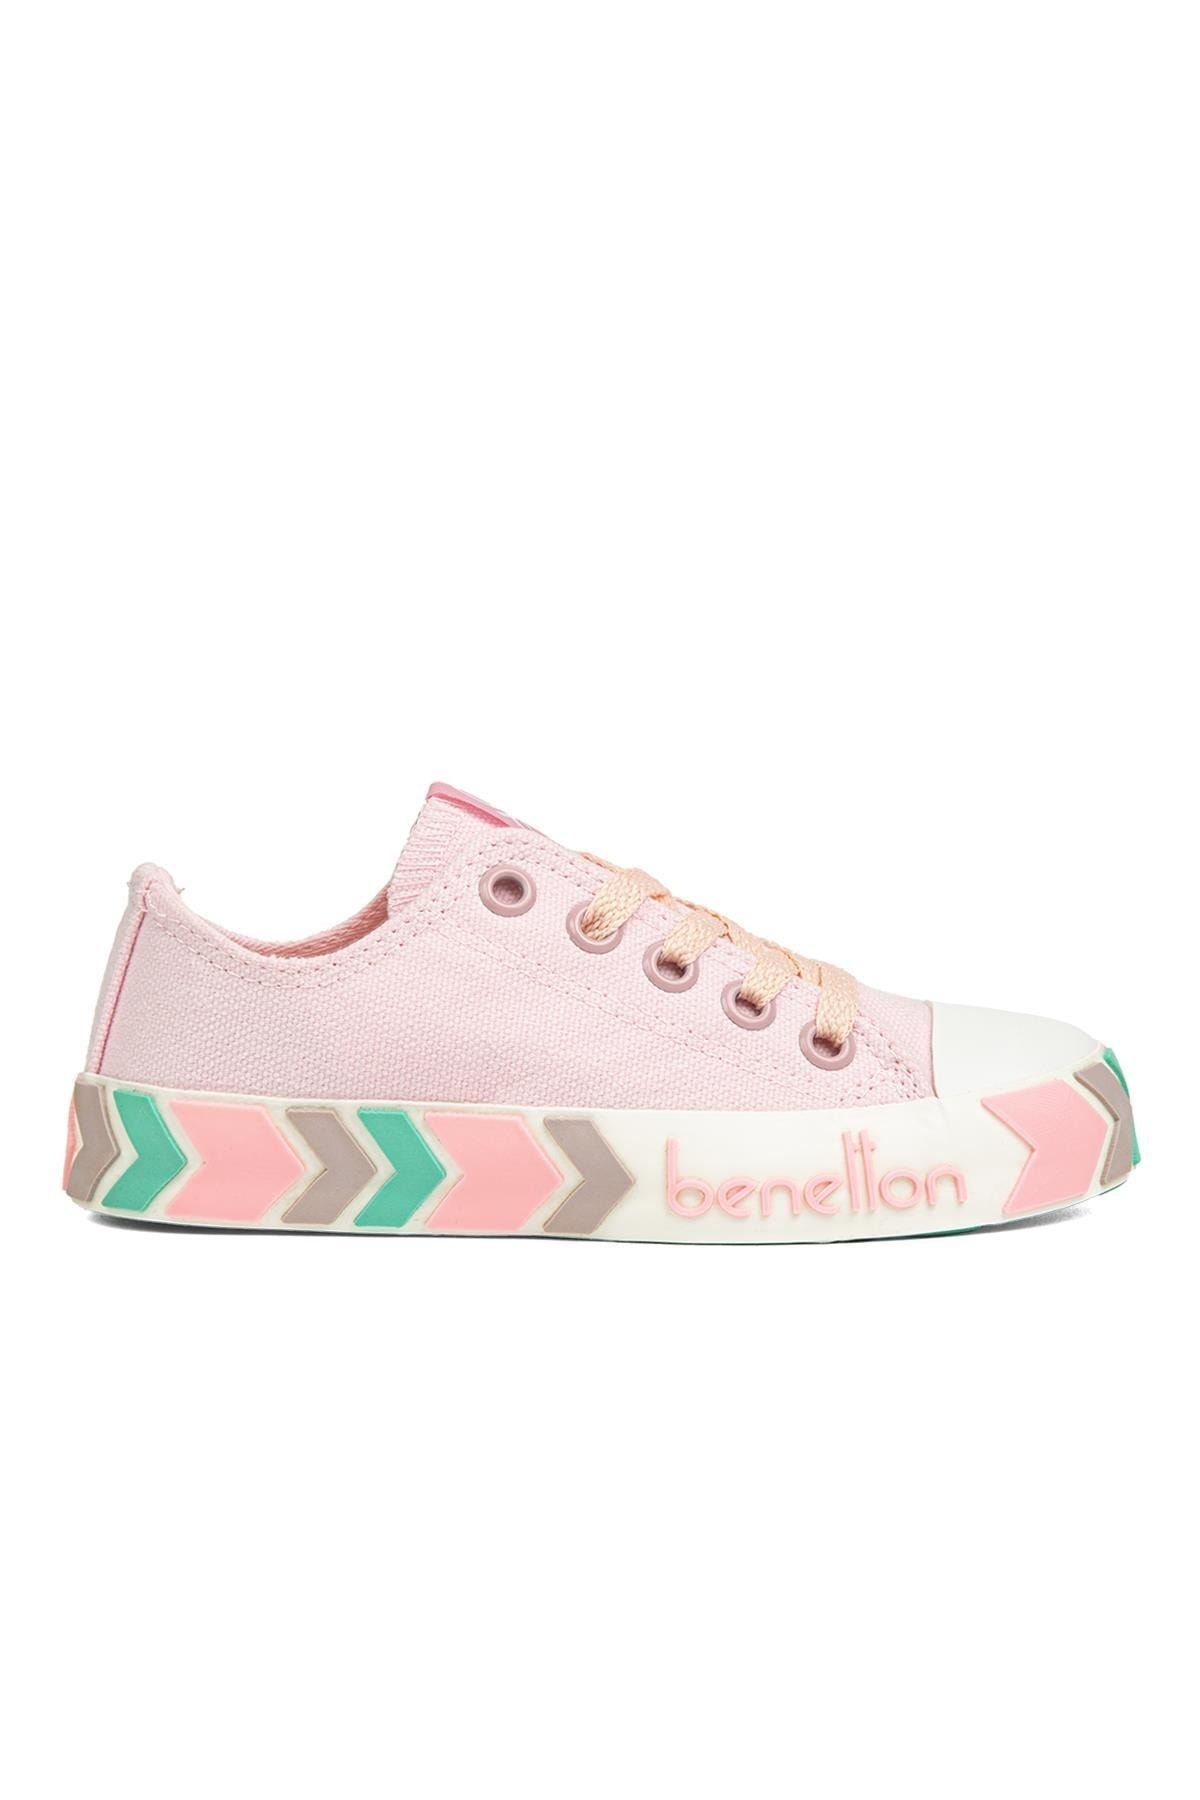 Benetton ® | Bn-90633-3409 Pembe - Çocuk Spor Ayakkabı